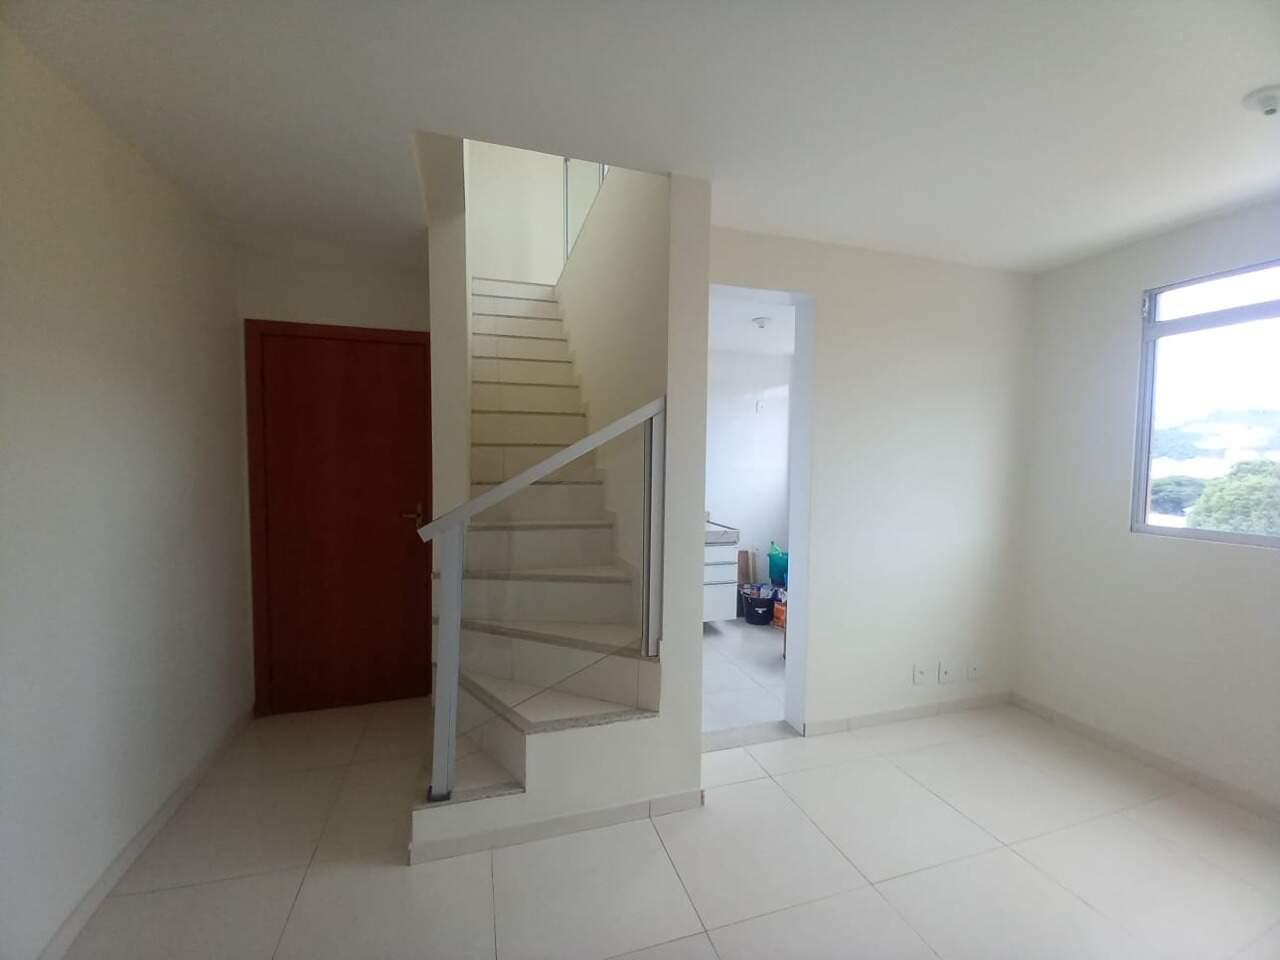 Imagem do imóvel Cobertura para aluguel, 3 quartos, 1 suíte, 3 vagas, Betânia - Belo Horizonte/MG